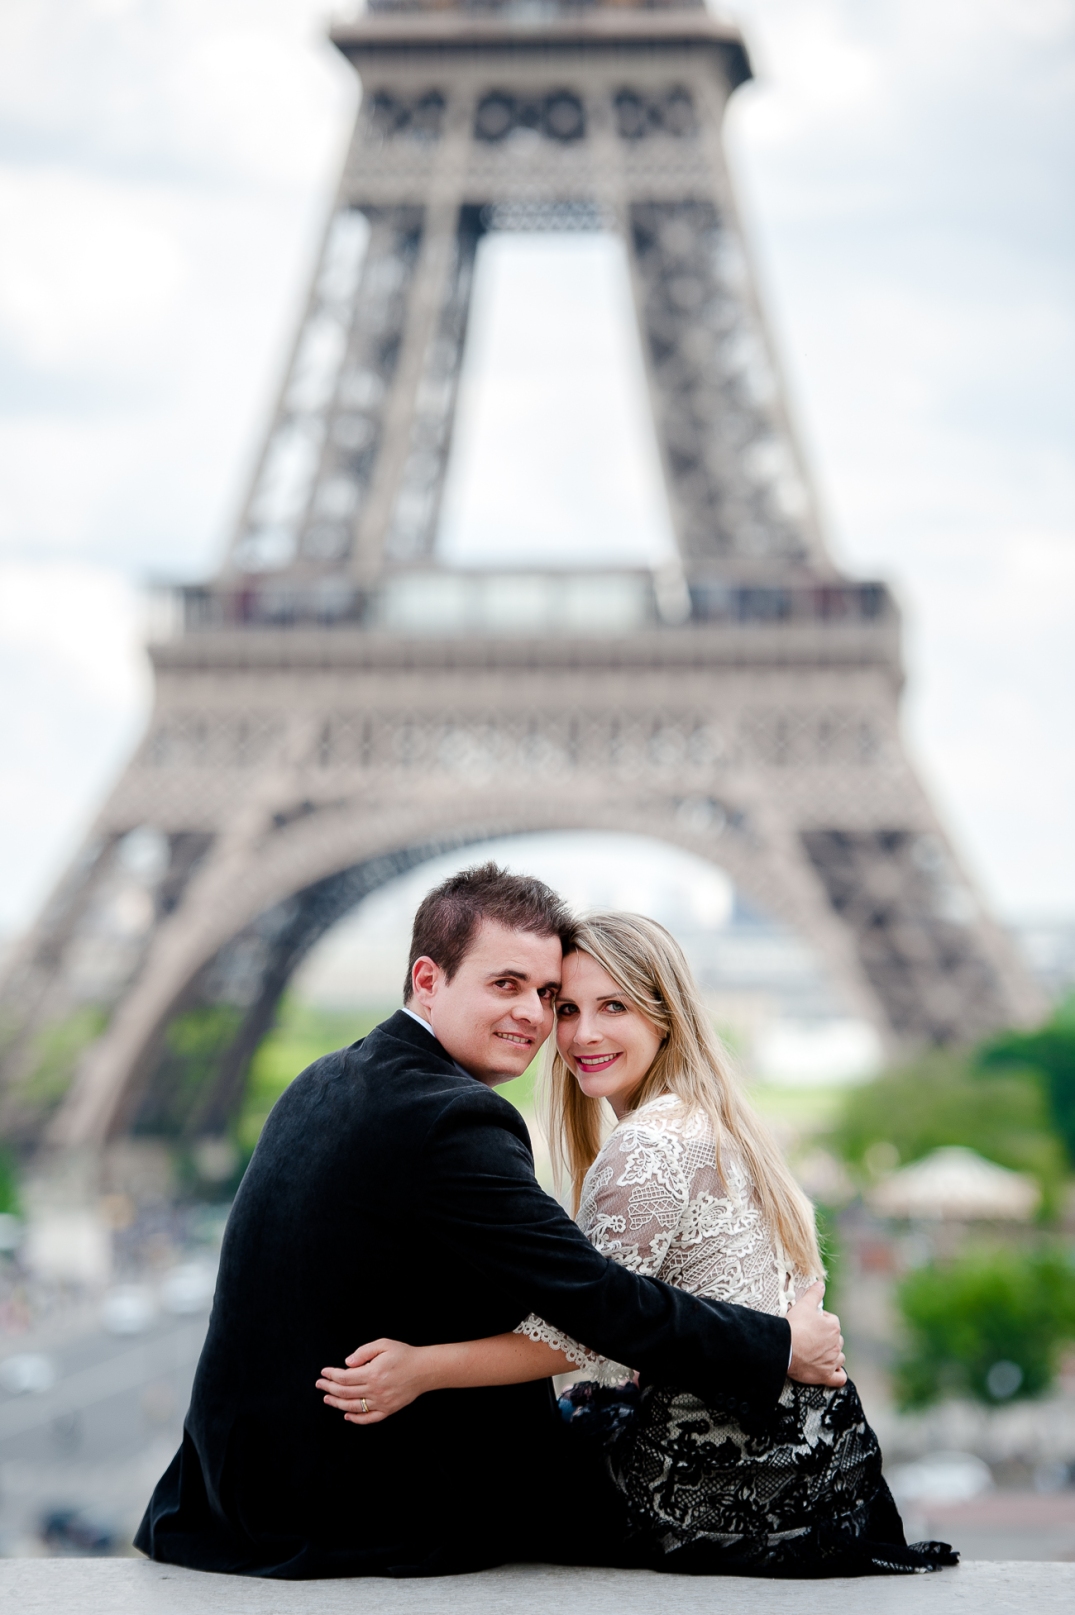 ensaio de fotos romantico em paris